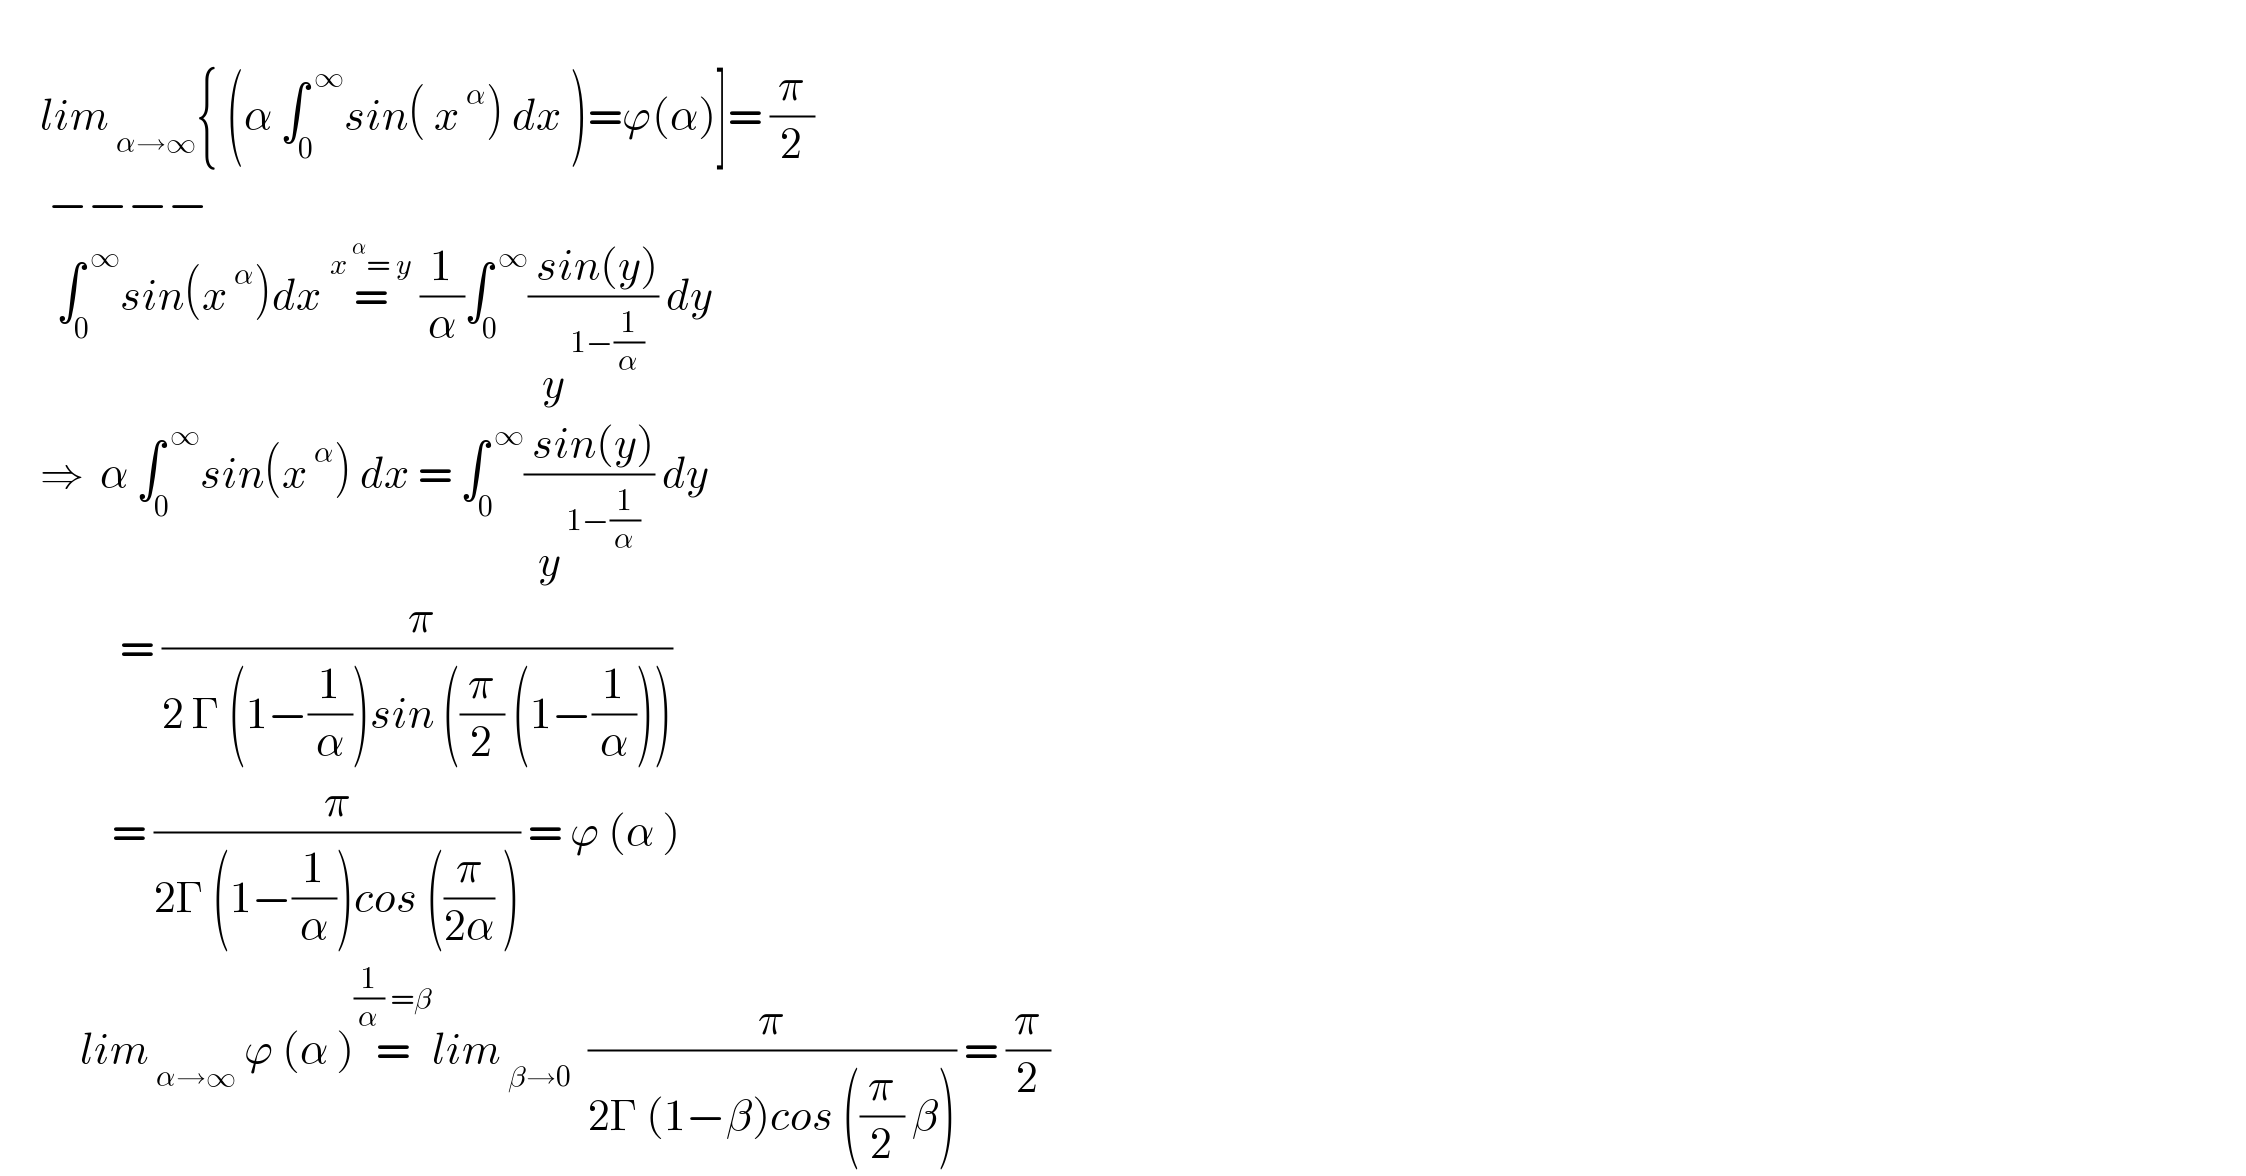        lim_( α→∞) { (α ∫_0 ^( ∞) sin( x^( α) ) dx )=ϕ(α)]= (π/2)        −−−−         ∫_0 ^( ∞) sin(x^( α) )dx =^(x^( α) = y)  (1/α)∫_0 ^( ∞) (( sin(y))/y^( 1−(1/α)) ) dy       ⇒  α ∫_0 ^( ∞) sin(x^( α) ) dx = ∫_0 ^( ∞) (( sin(y))/y^( 1−(1/α)) ) dy                 = (( π)/(2 Γ (1−(1/α))sin ((π/2) (1−(1/α)))))                = (π/(2Γ (1−(1/α))cos ((π/(2α)) ))) = ϕ (α )            lim_( α→∞)  ϕ (α )=^((1/α) =β) lim_( β→0)   (π/(2Γ (1−β)cos ((π/2) β))) = (π/2)                